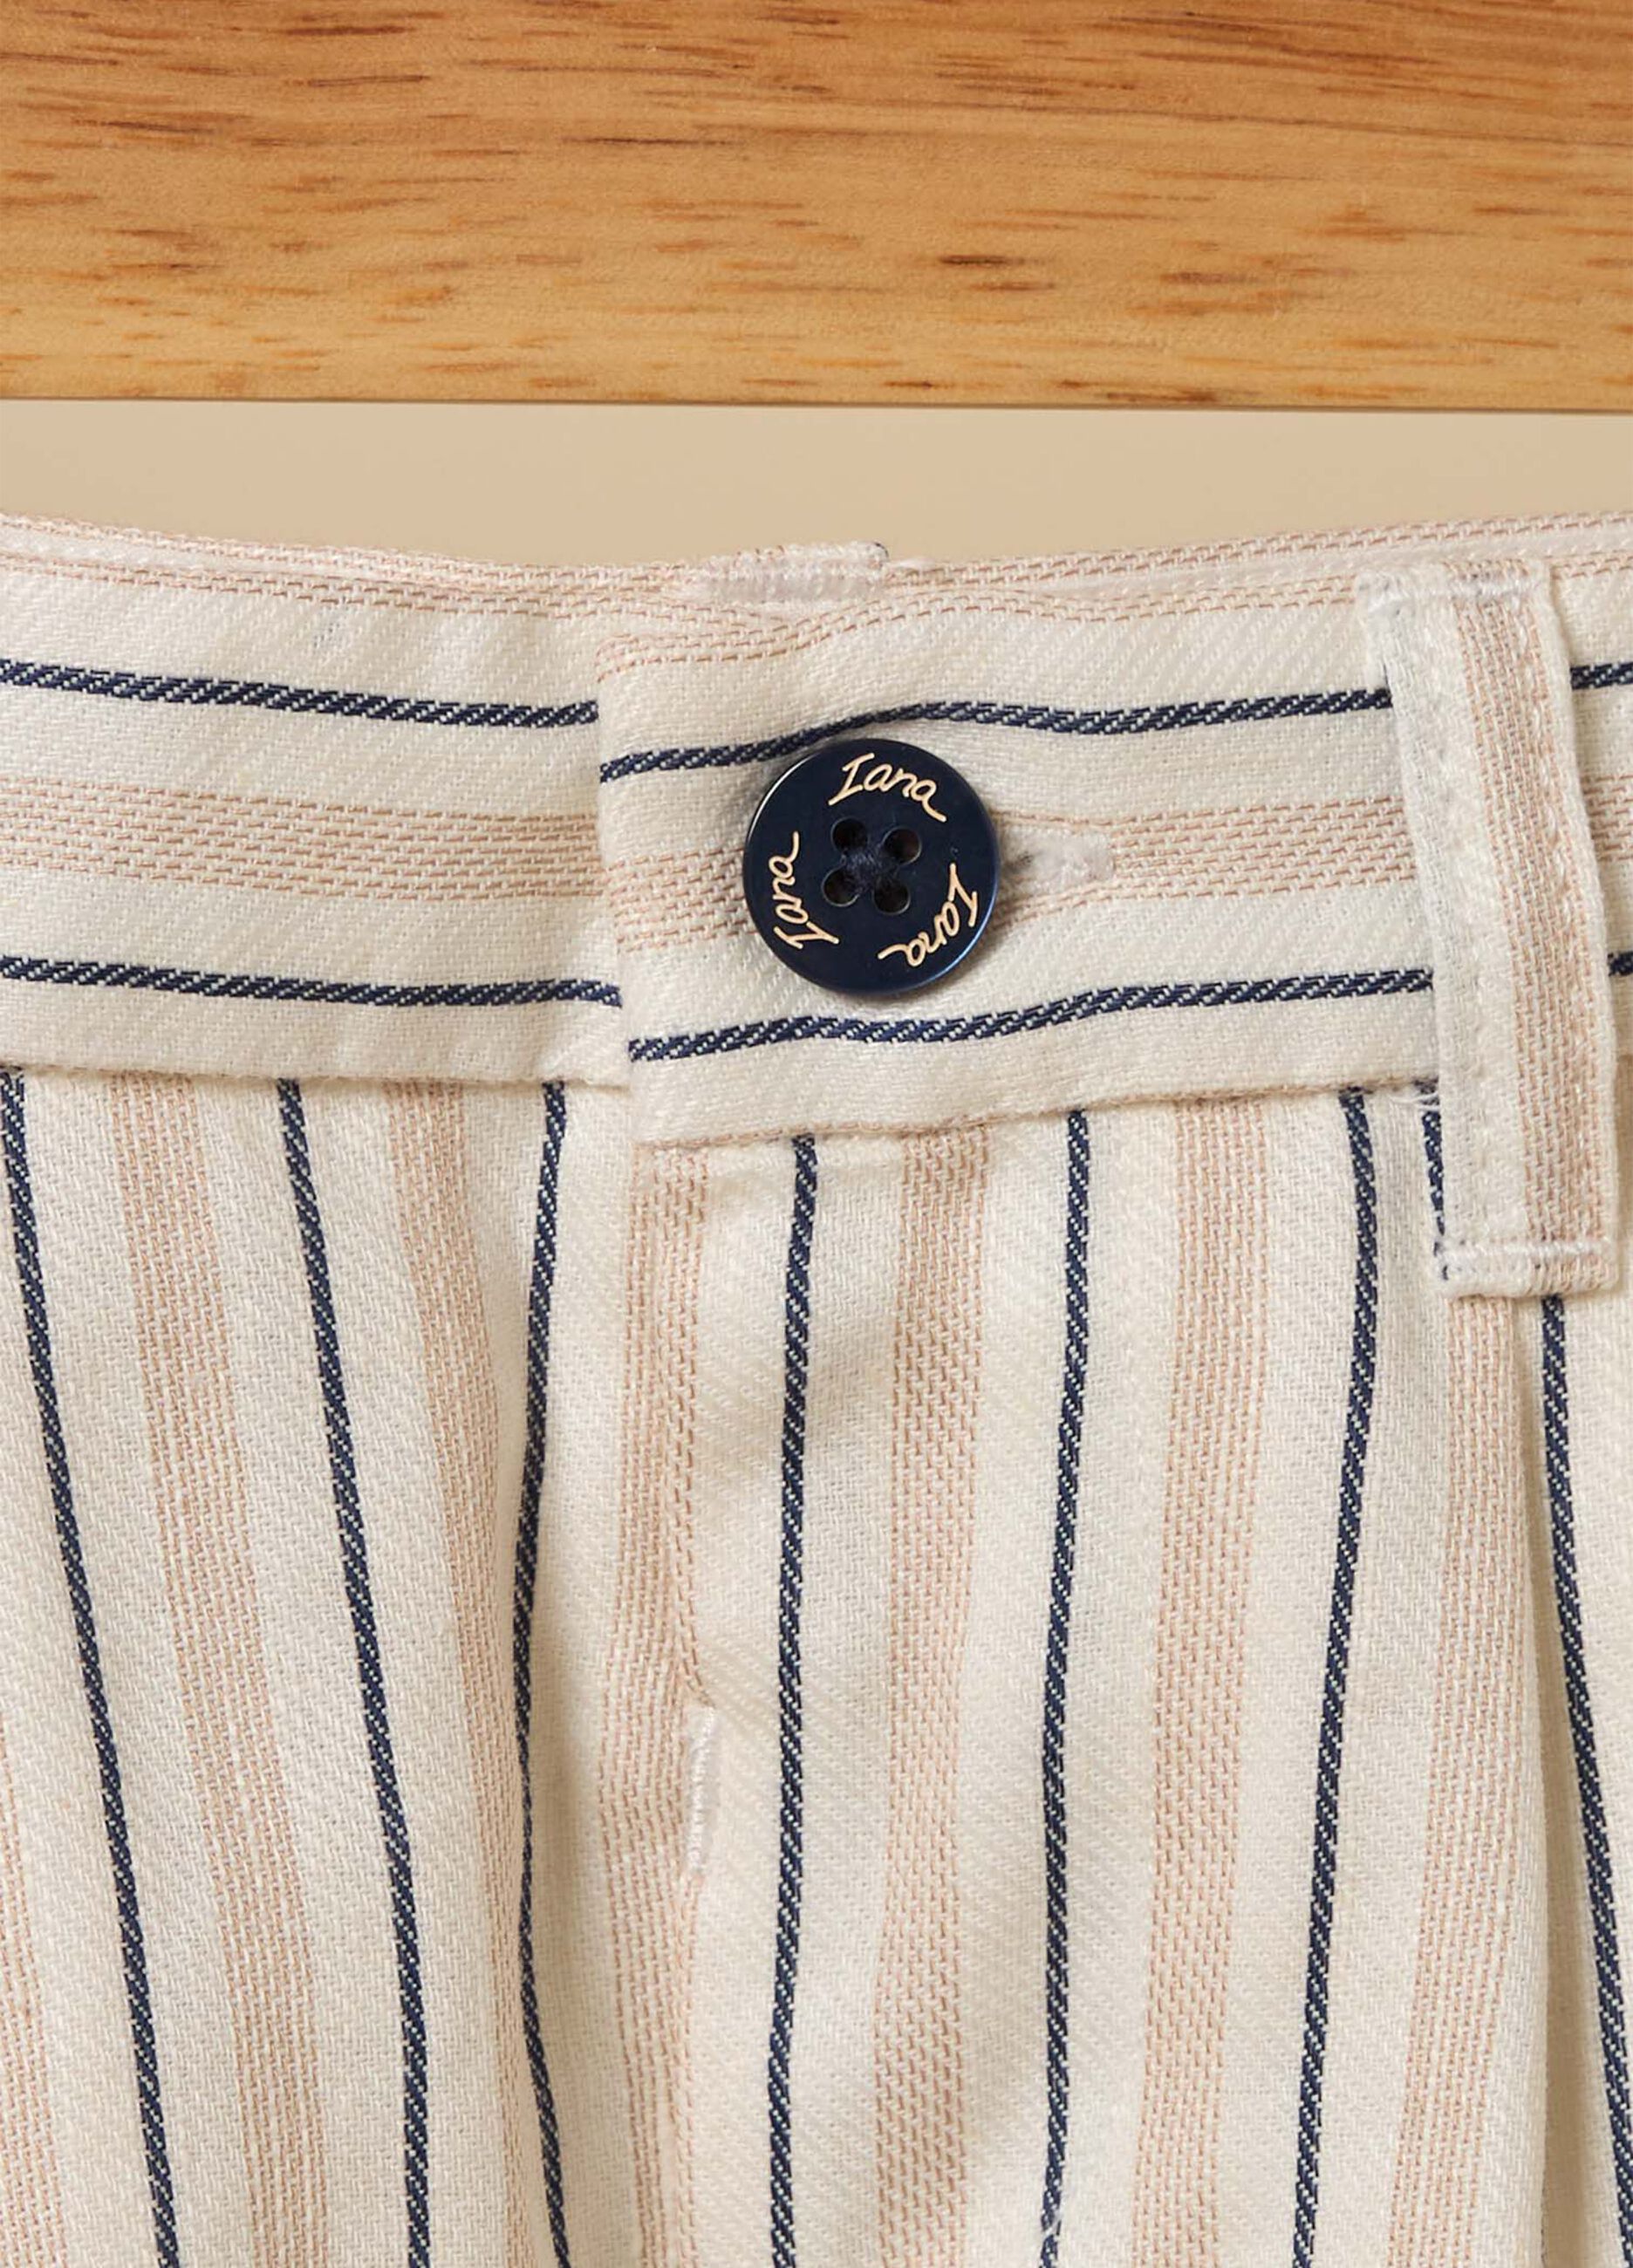 Linen blend striped shorts